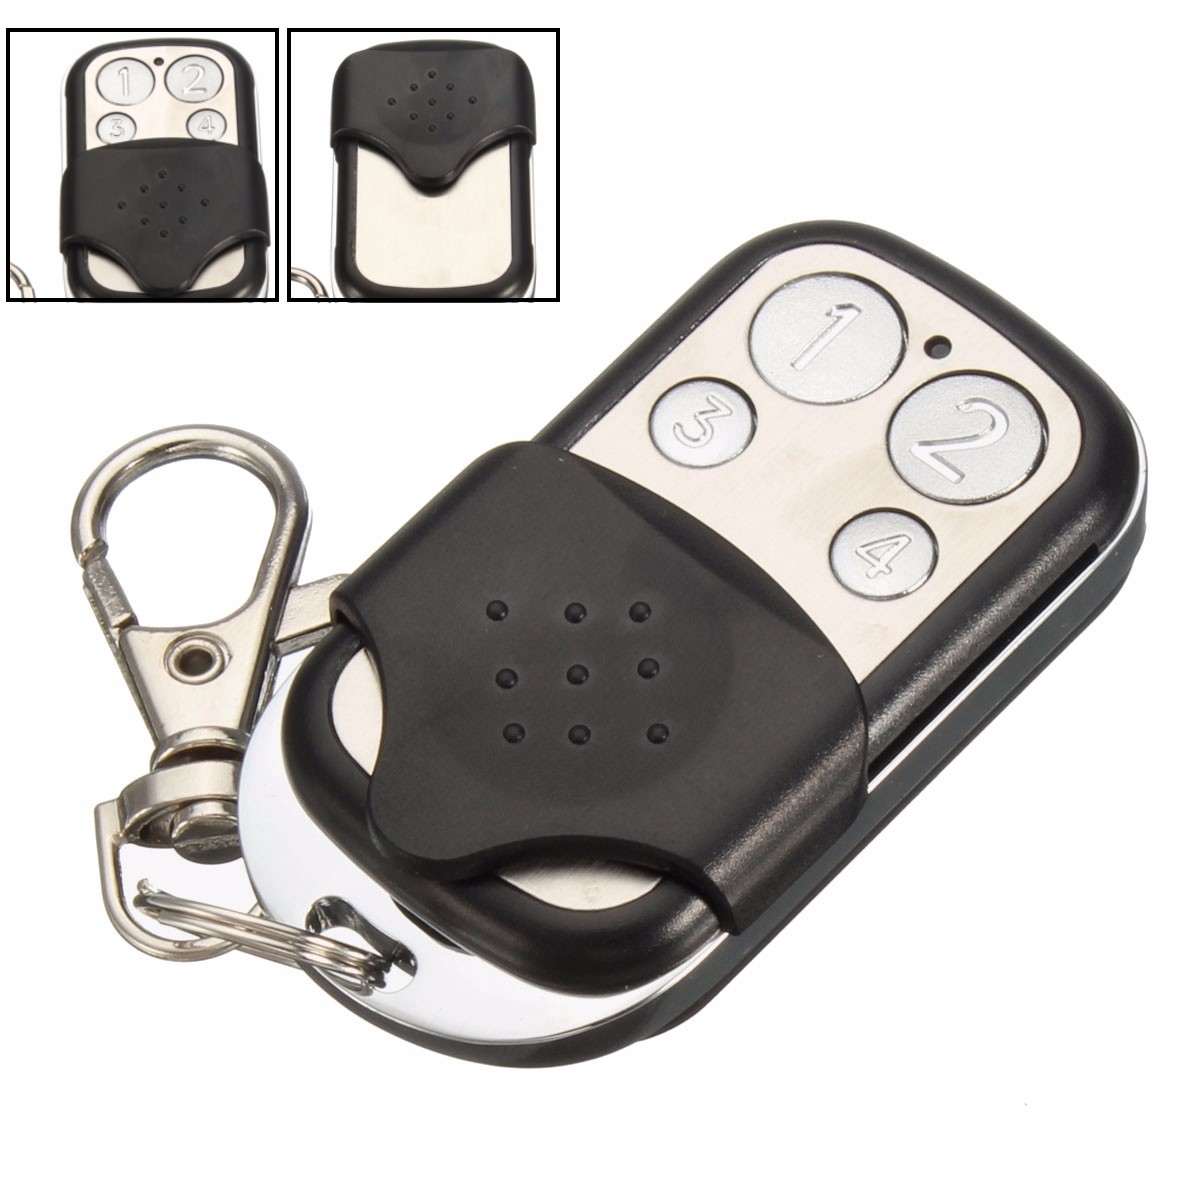 4-Button-433MHz-Garage-Gate-Key-Remote-Control-For-Marantec-D302D304D313-Comfort-220-1060990-4